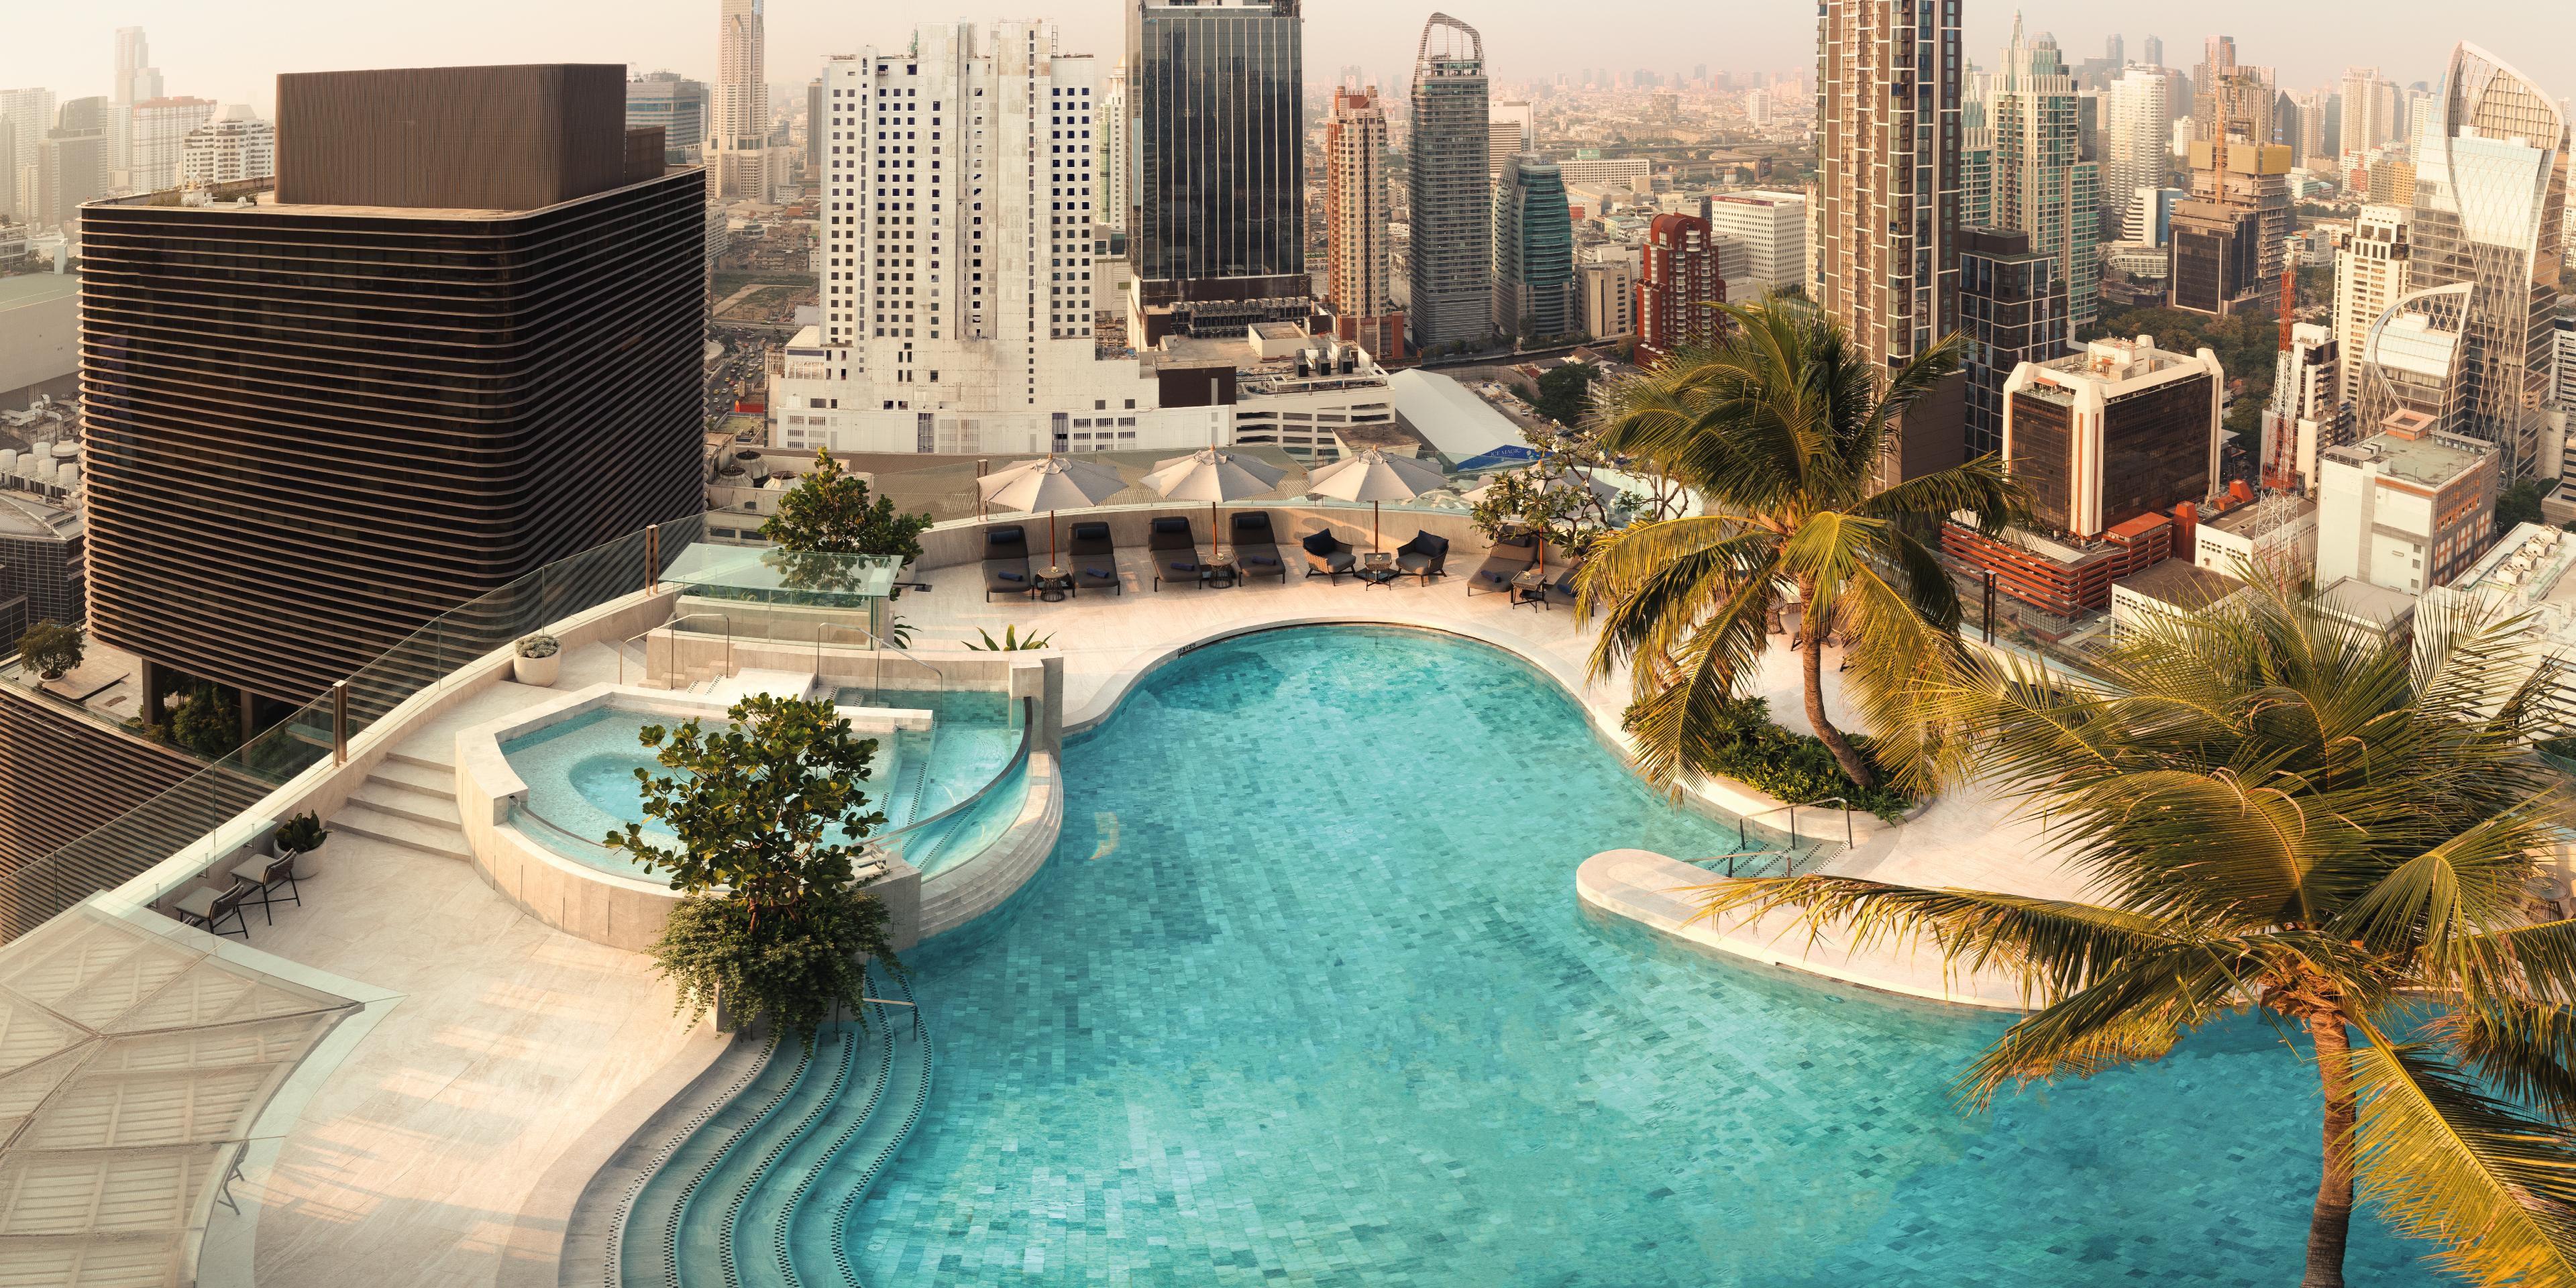 View of Rooftop Pool at the InterContinental Bangkok